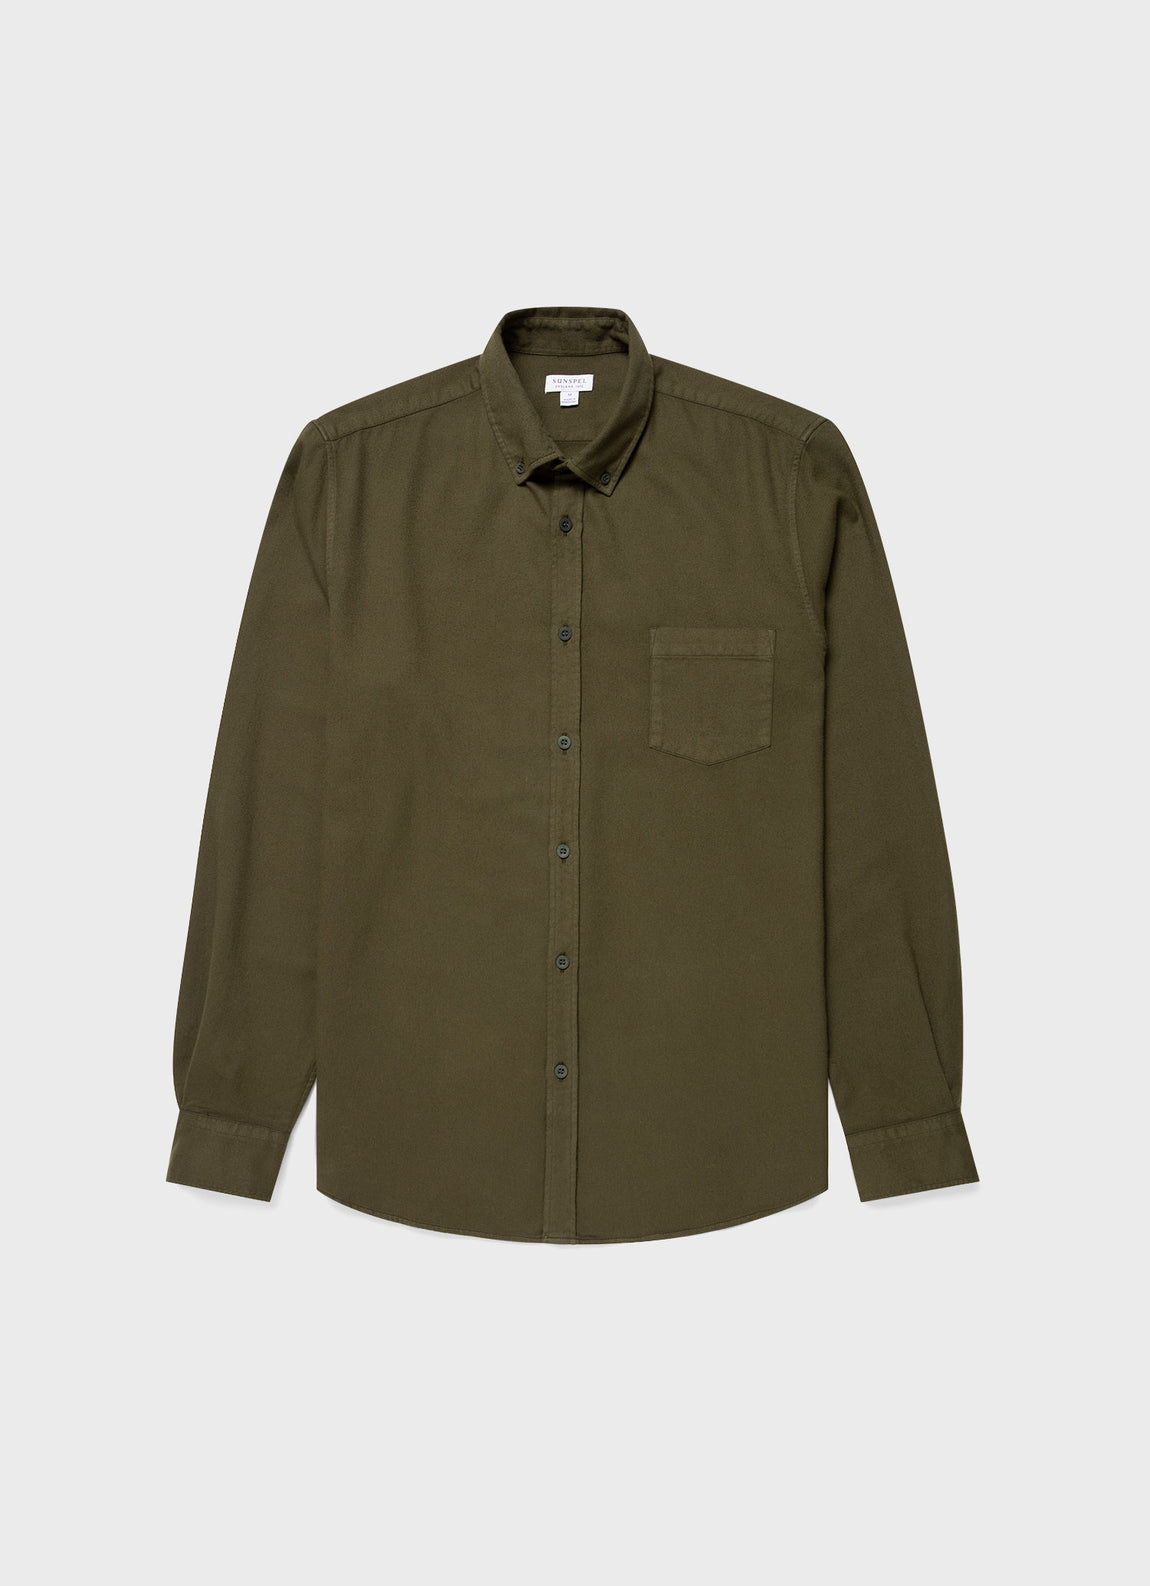 Men's Button Down Flannel Shirt in Dark Olive | Sunspel